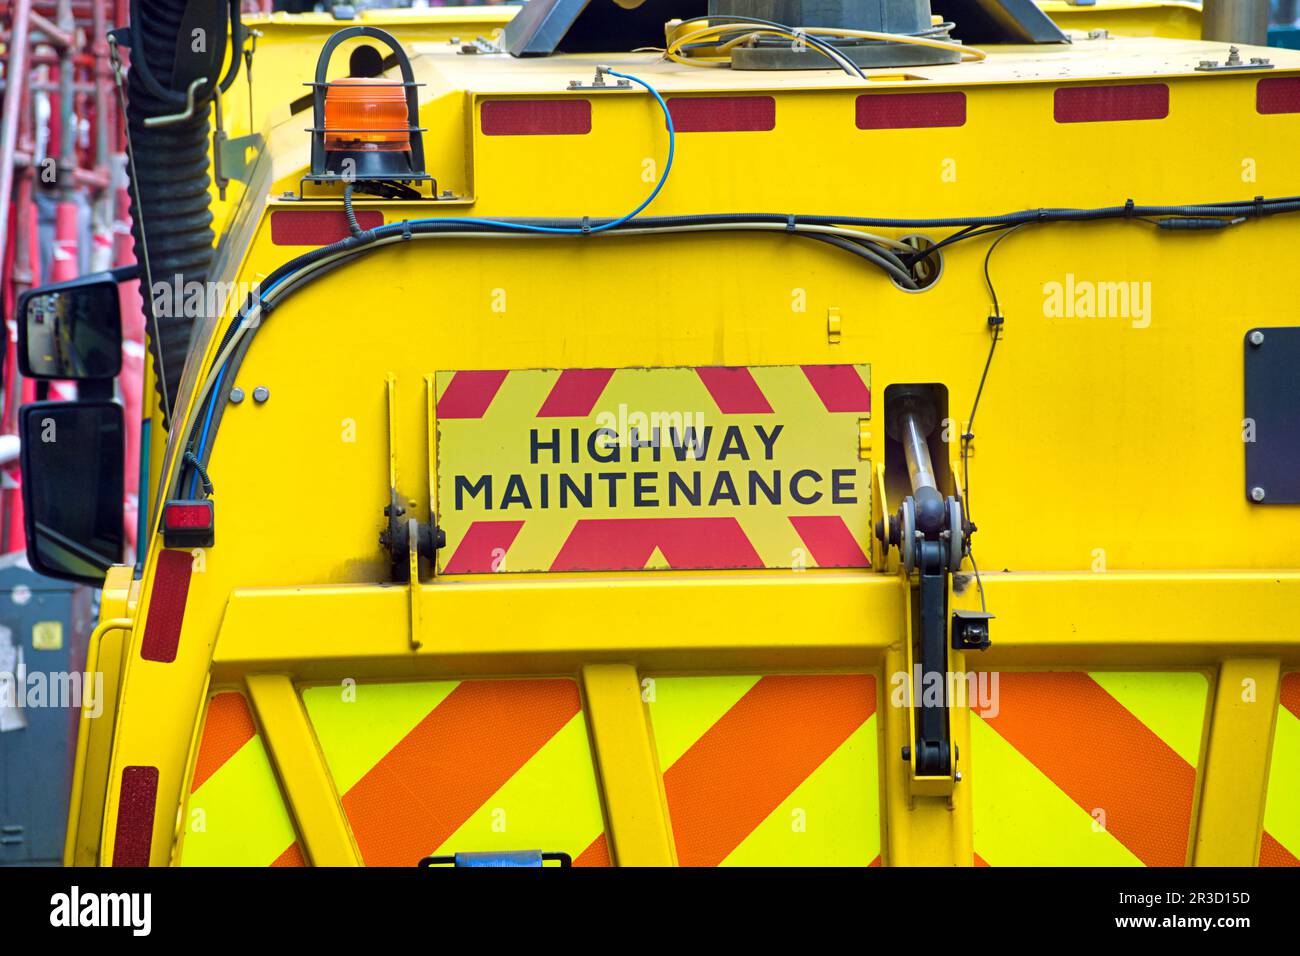 highway maintenance vehicle Stock Photo